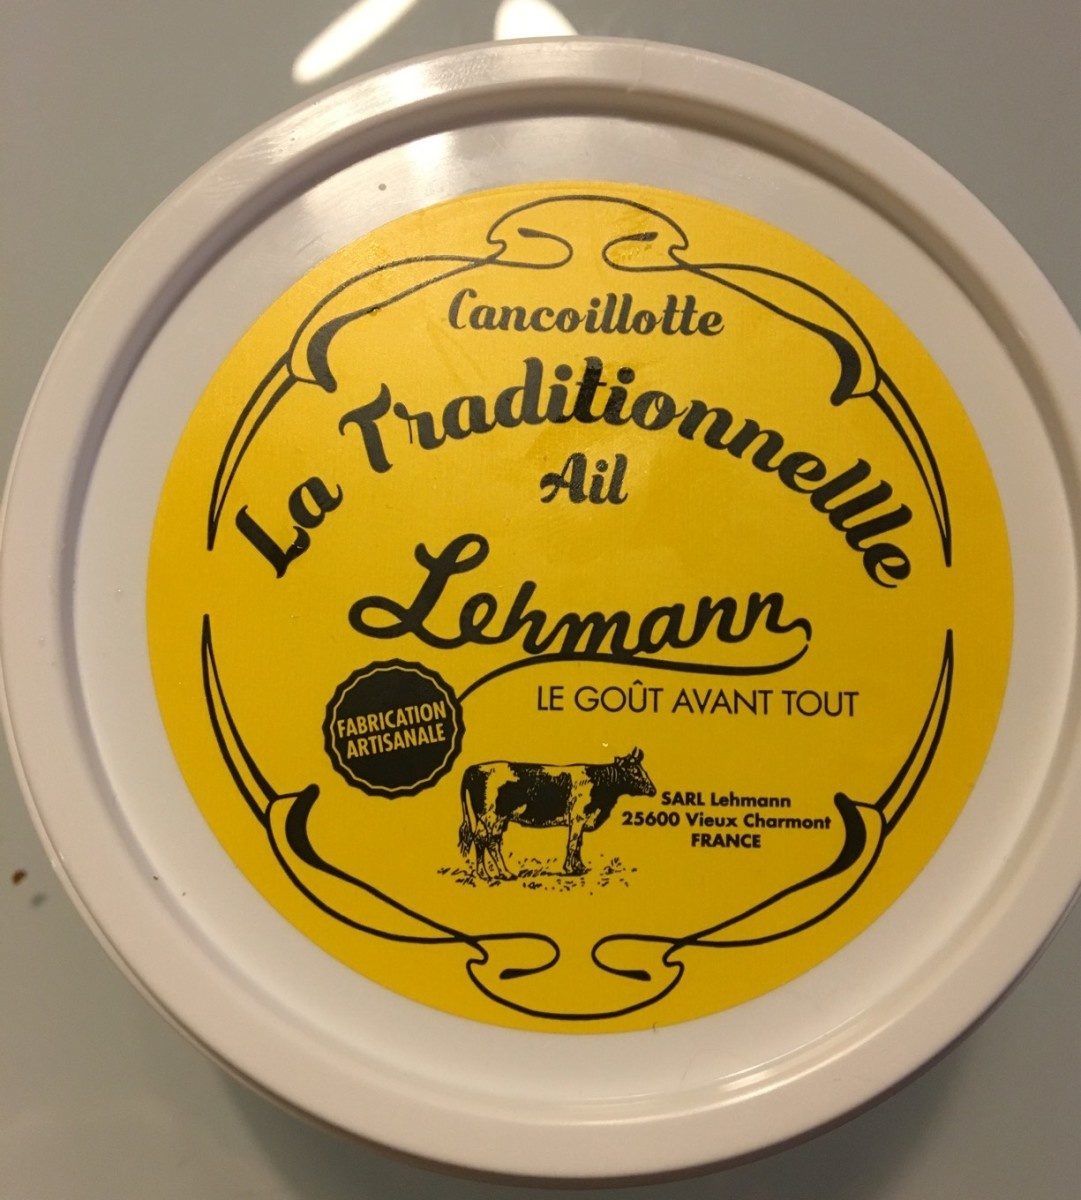 Cancoillotte la traditionnelle ail - Produit